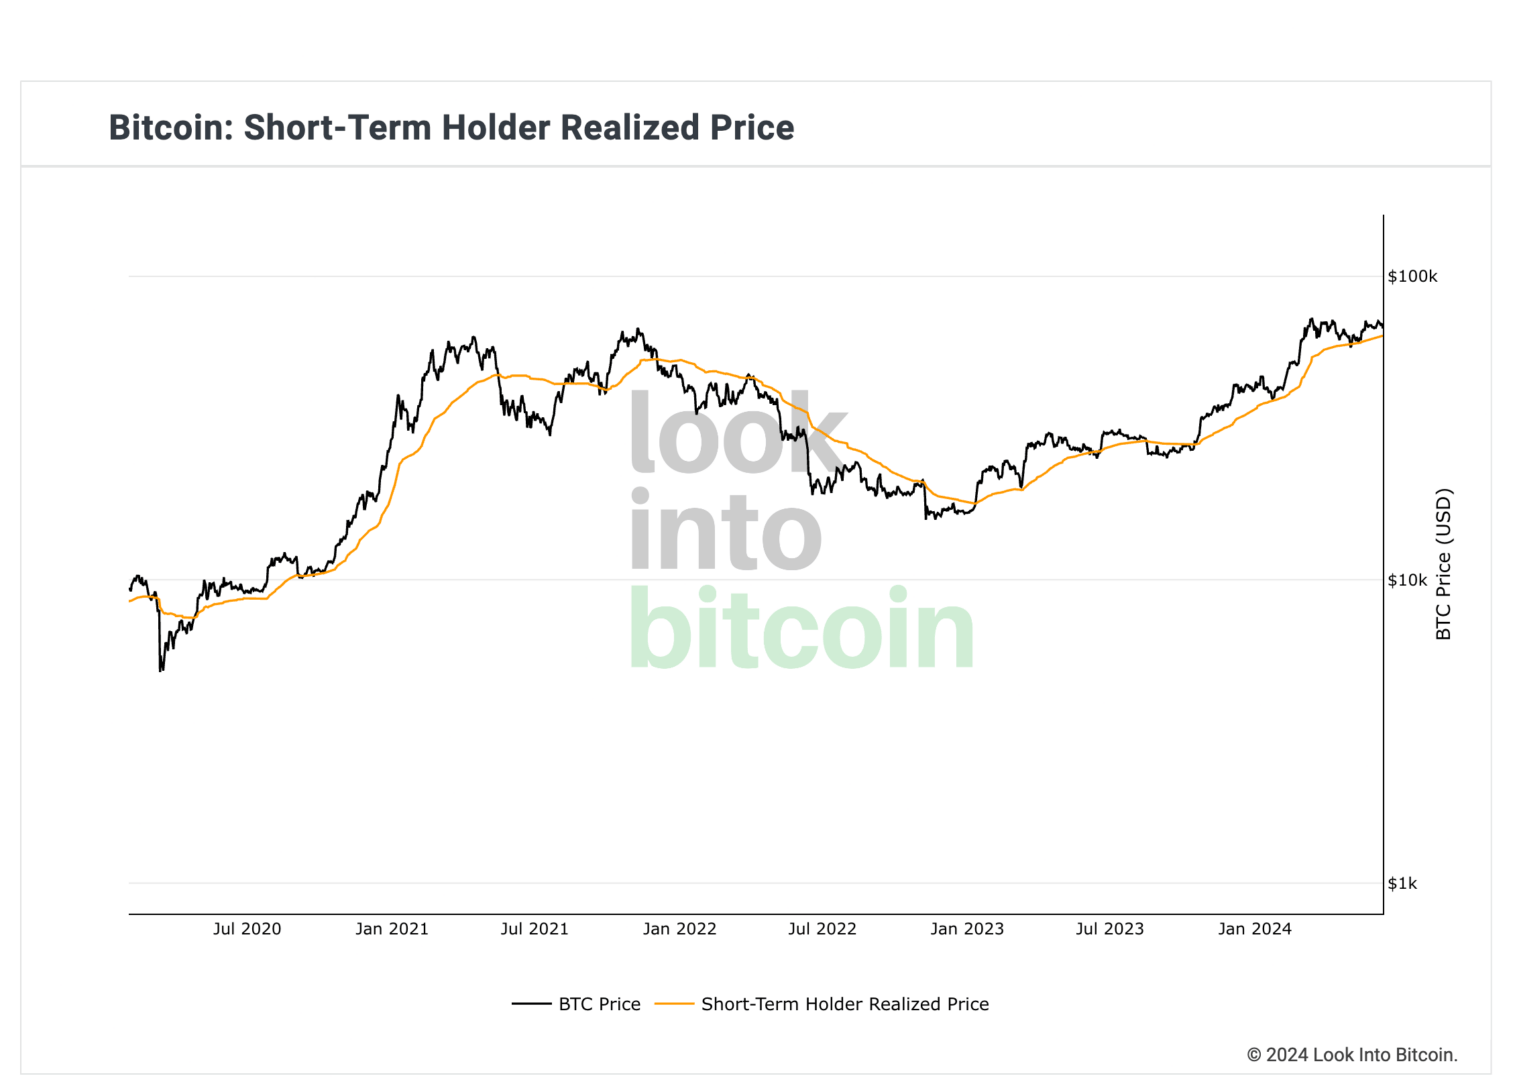 Malgré la chute, le Bitcoin reste haussier selon le prix réalisé des détenteurs à court terme. 